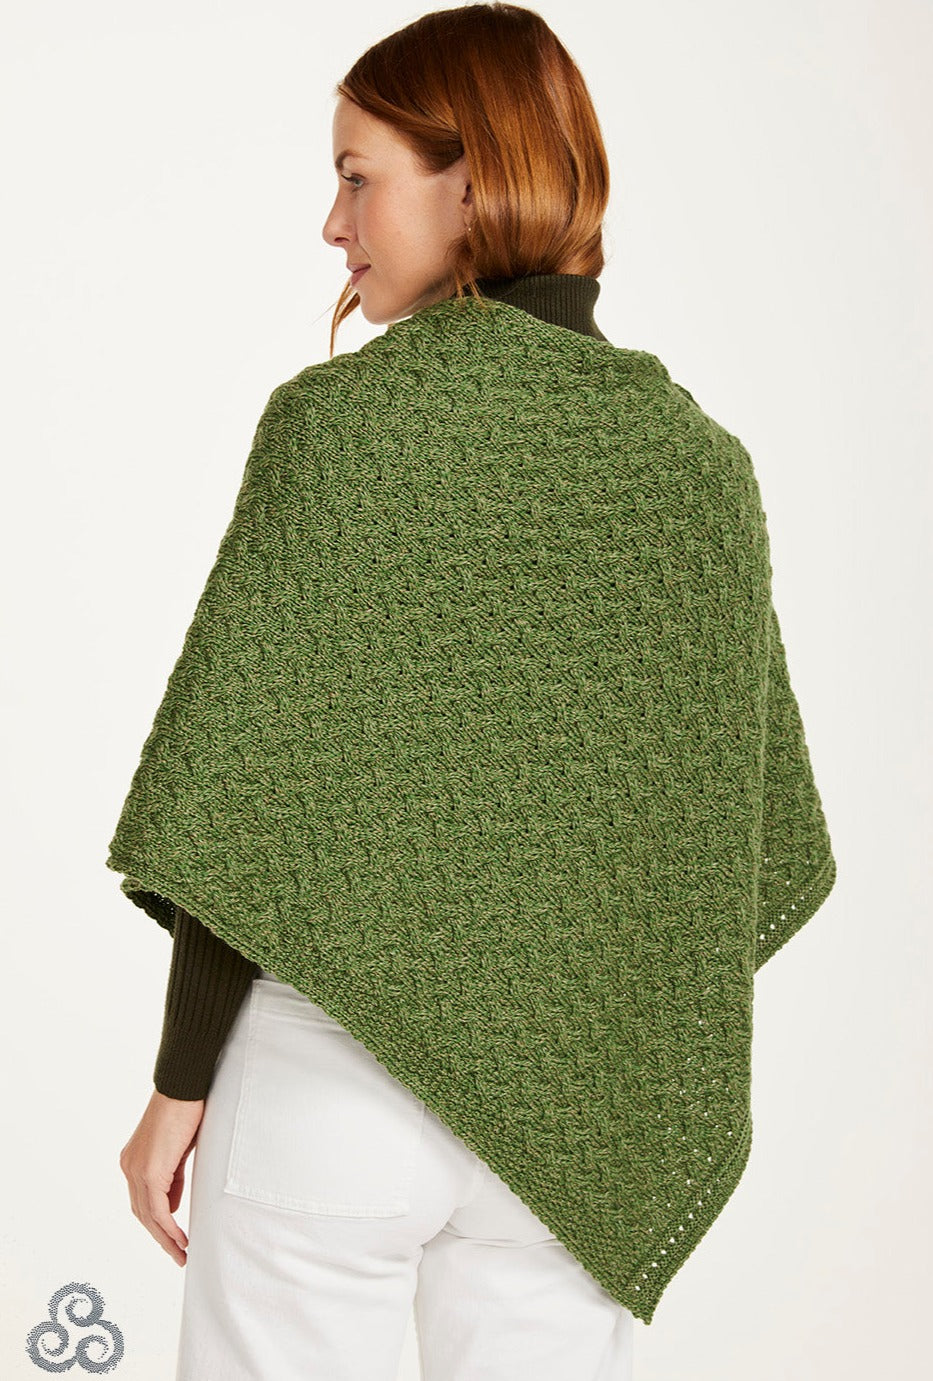  Poncho aran knit